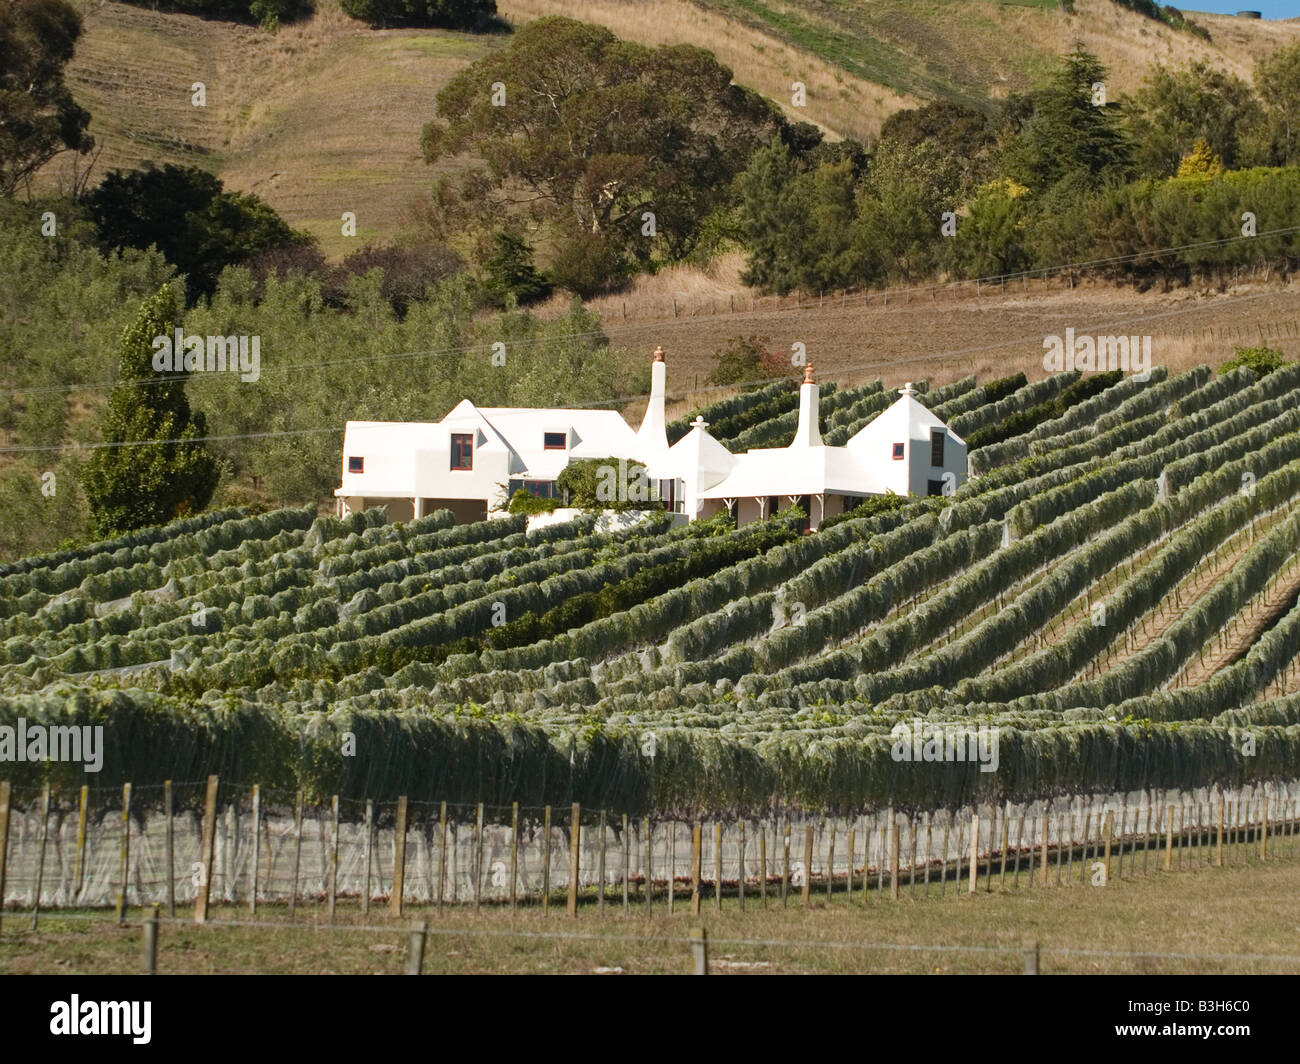 Rows of grapevines at Te Mata estate vineyard Hawkes Bay New Zealand Stock Photo